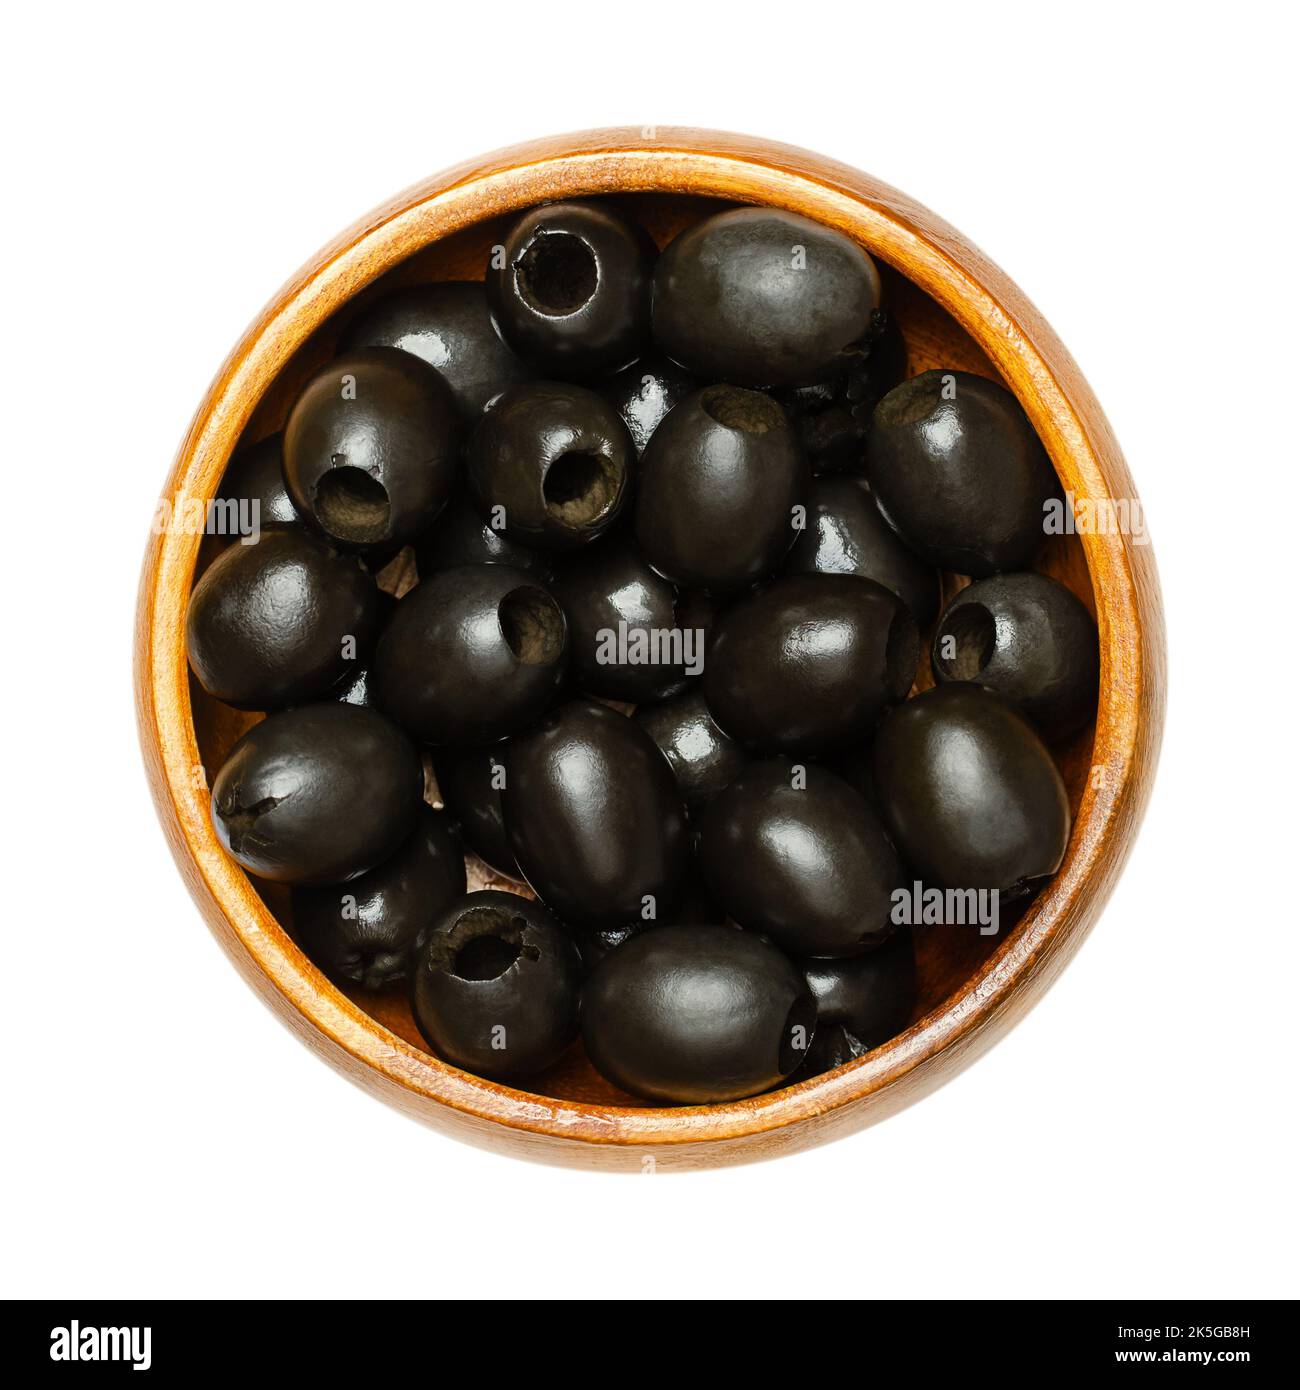 Hojiblanca, olives noires dénoyautées, dans un bol en bois. Olive européenne, Olea europaea, cultivar de Lucena en Espagne, principalement cultivé en Andalousie. Banque D'Images